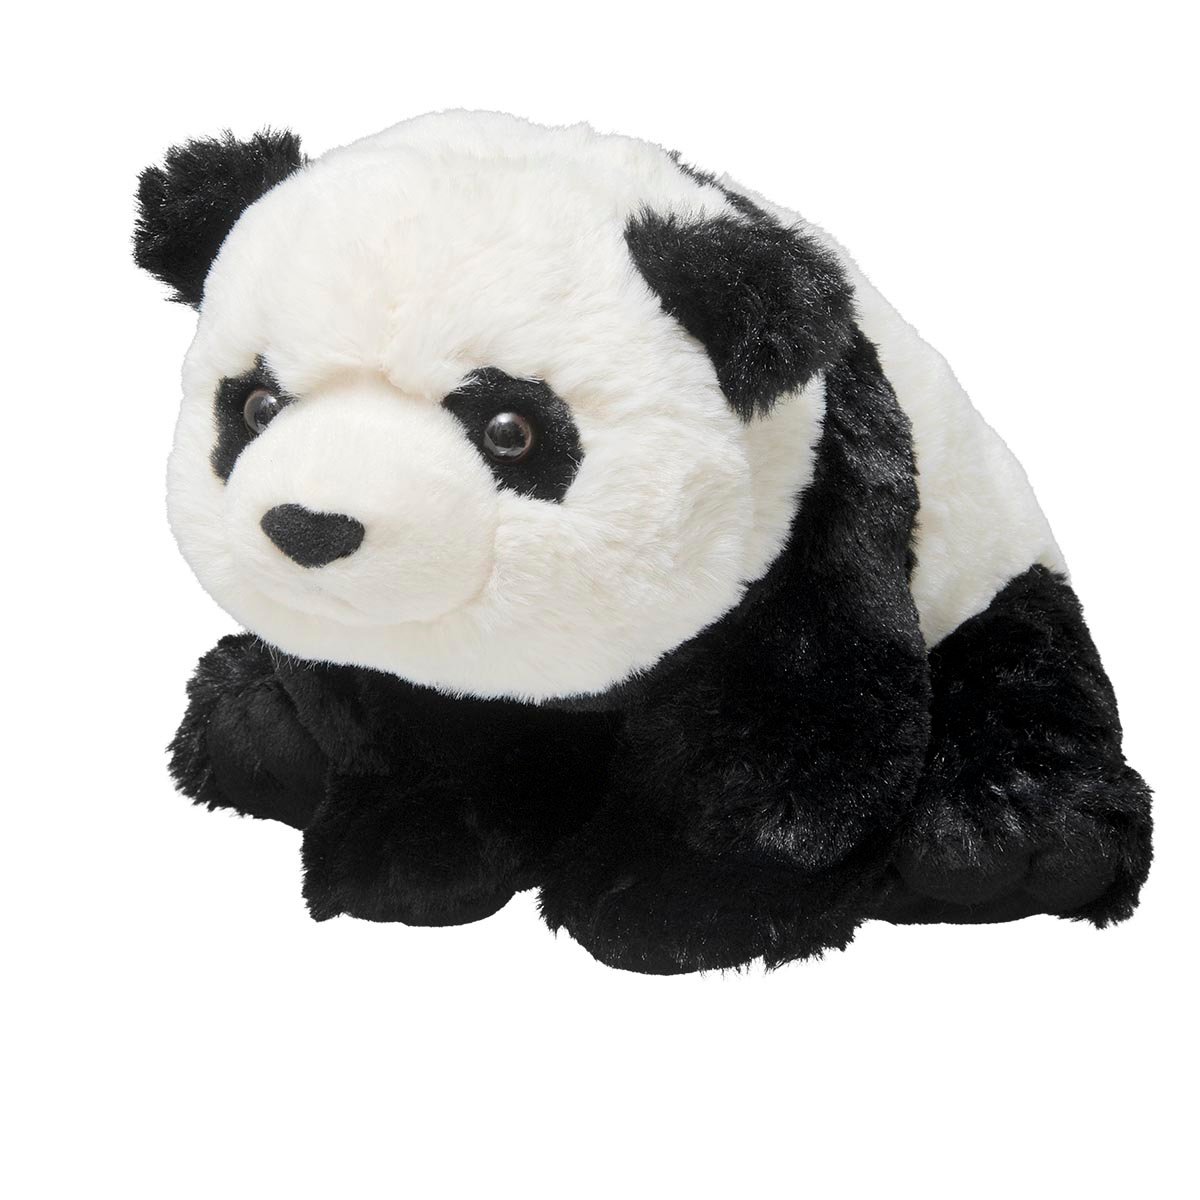 wwf panda toy